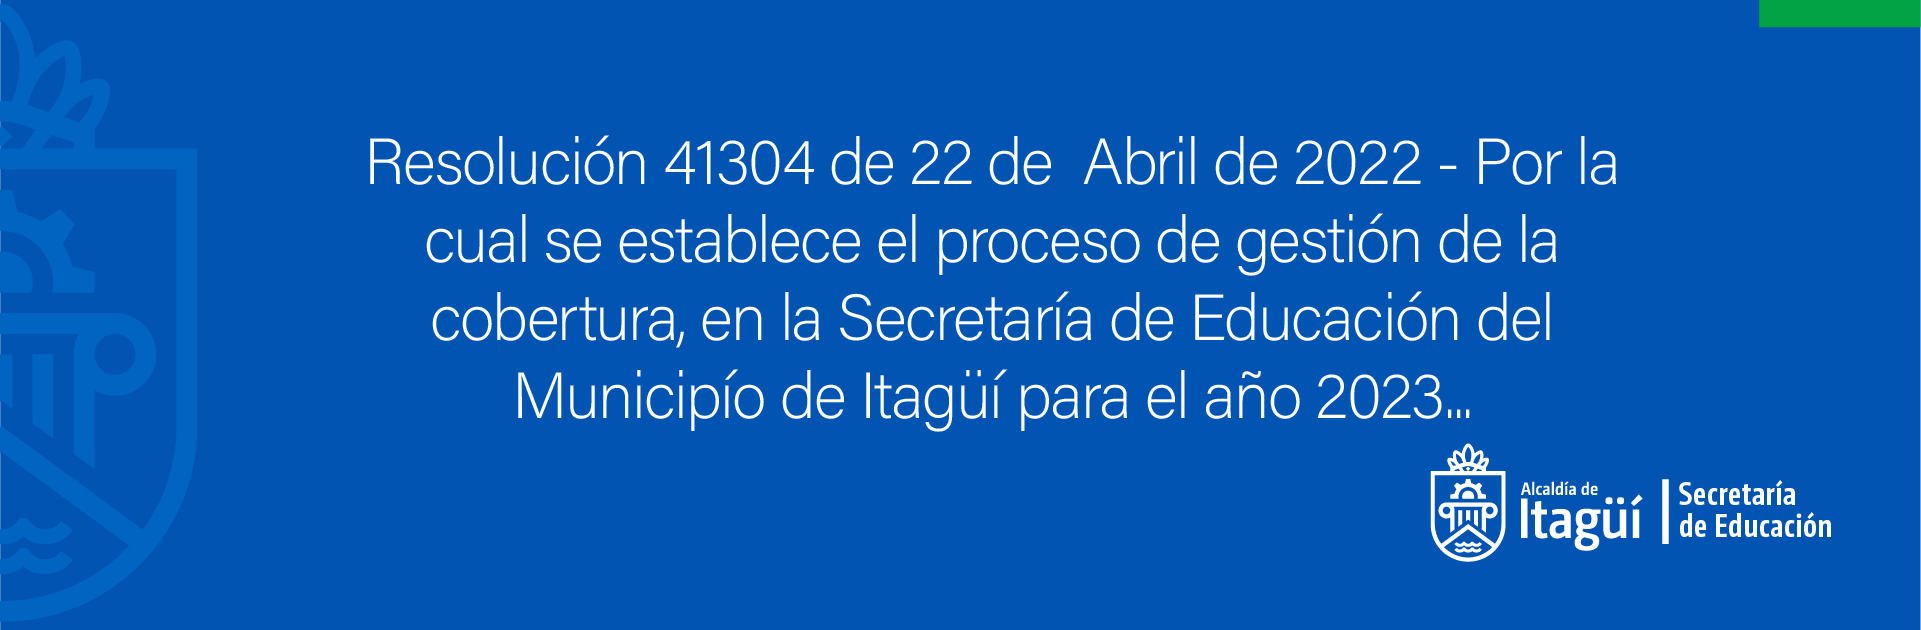 Resolución 41304 de 22 de  Abril de 2022 - Por la cual se establece el proceso de gestión de la cobertura...